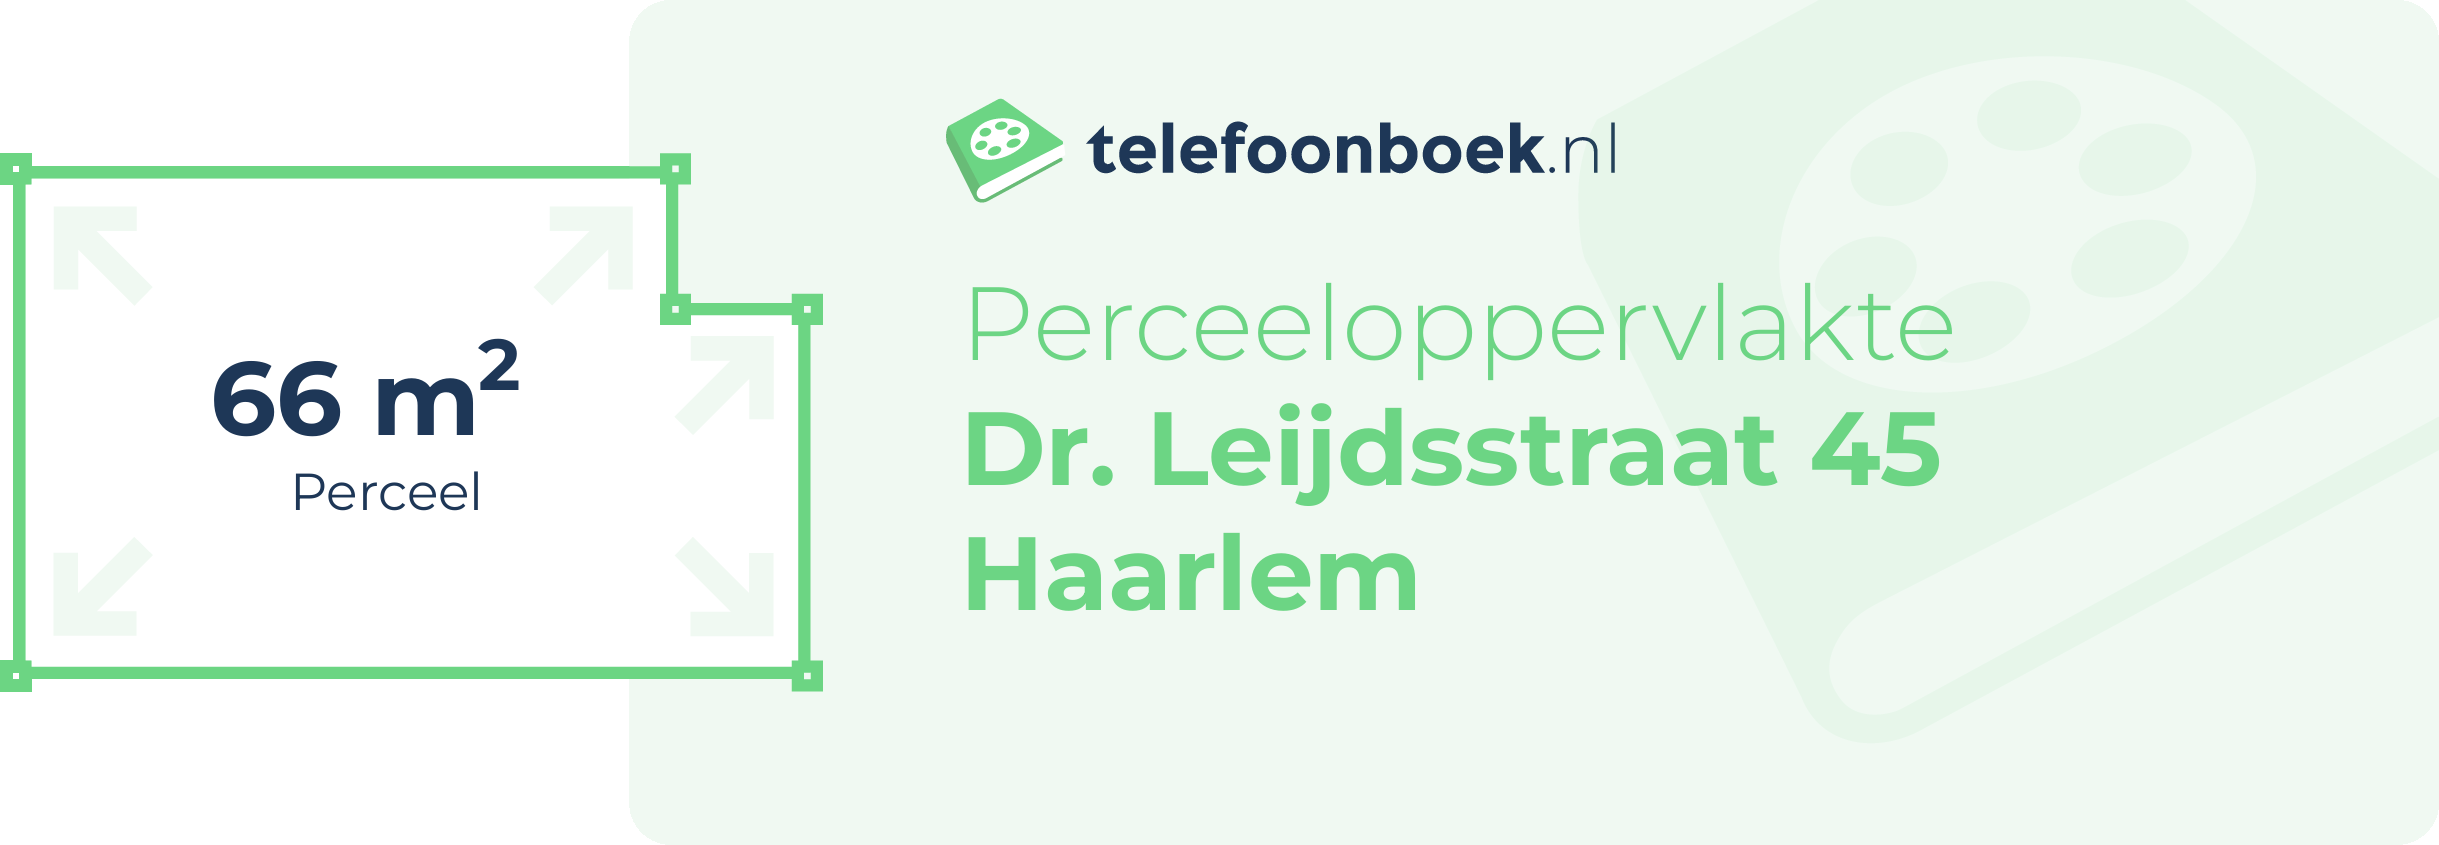 Perceeloppervlakte Dr. Leijdsstraat 45 Haarlem